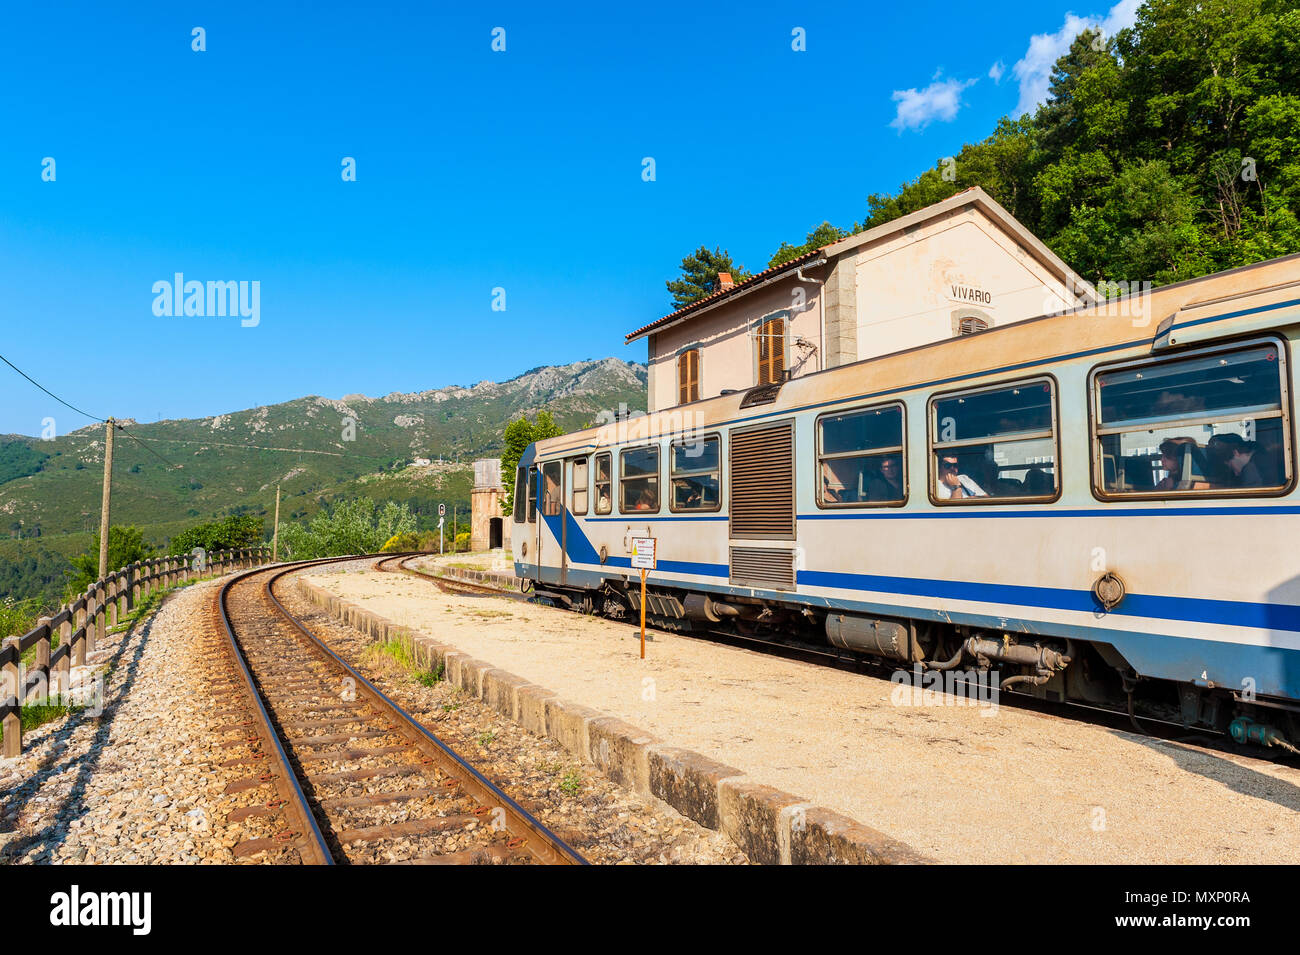 Zug bei Vivario Station in Korsika, Frankreich. Korsika hat drei Linien und wird von der Chemins de Fer de la Corse (korsische Eisenbahn) betrieben. Stockfoto